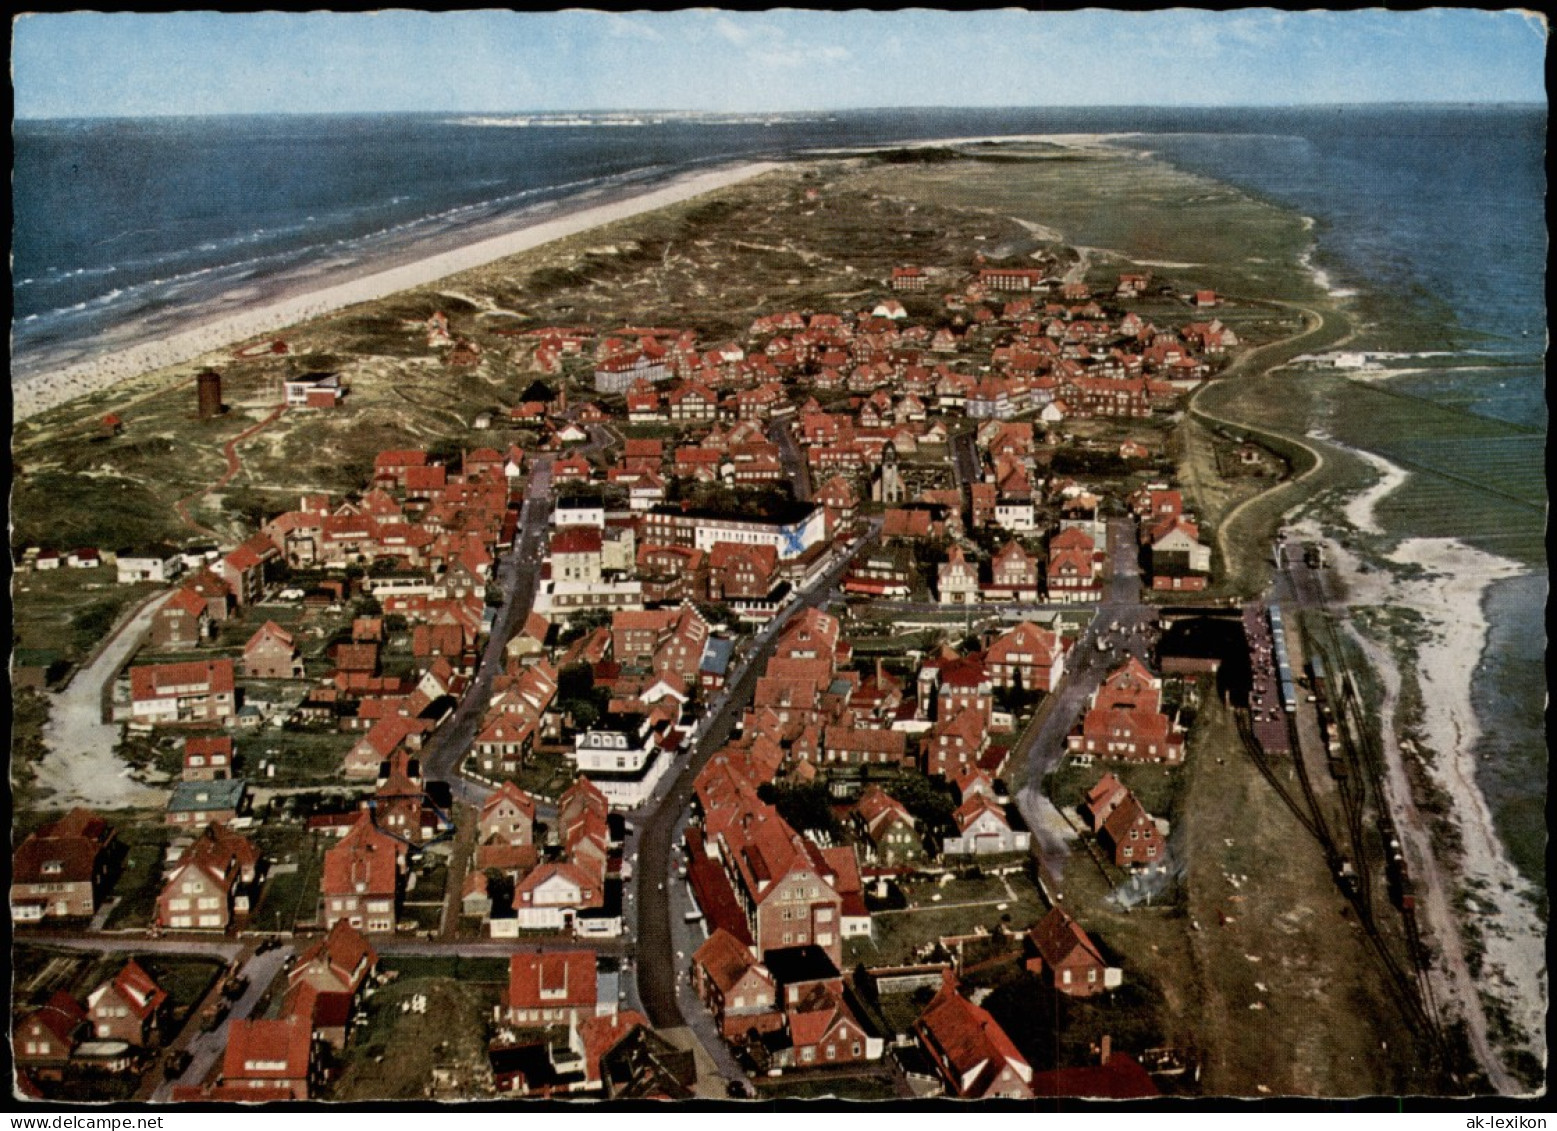 Ansichtskarte Juist Luftbild 1968 - Juist